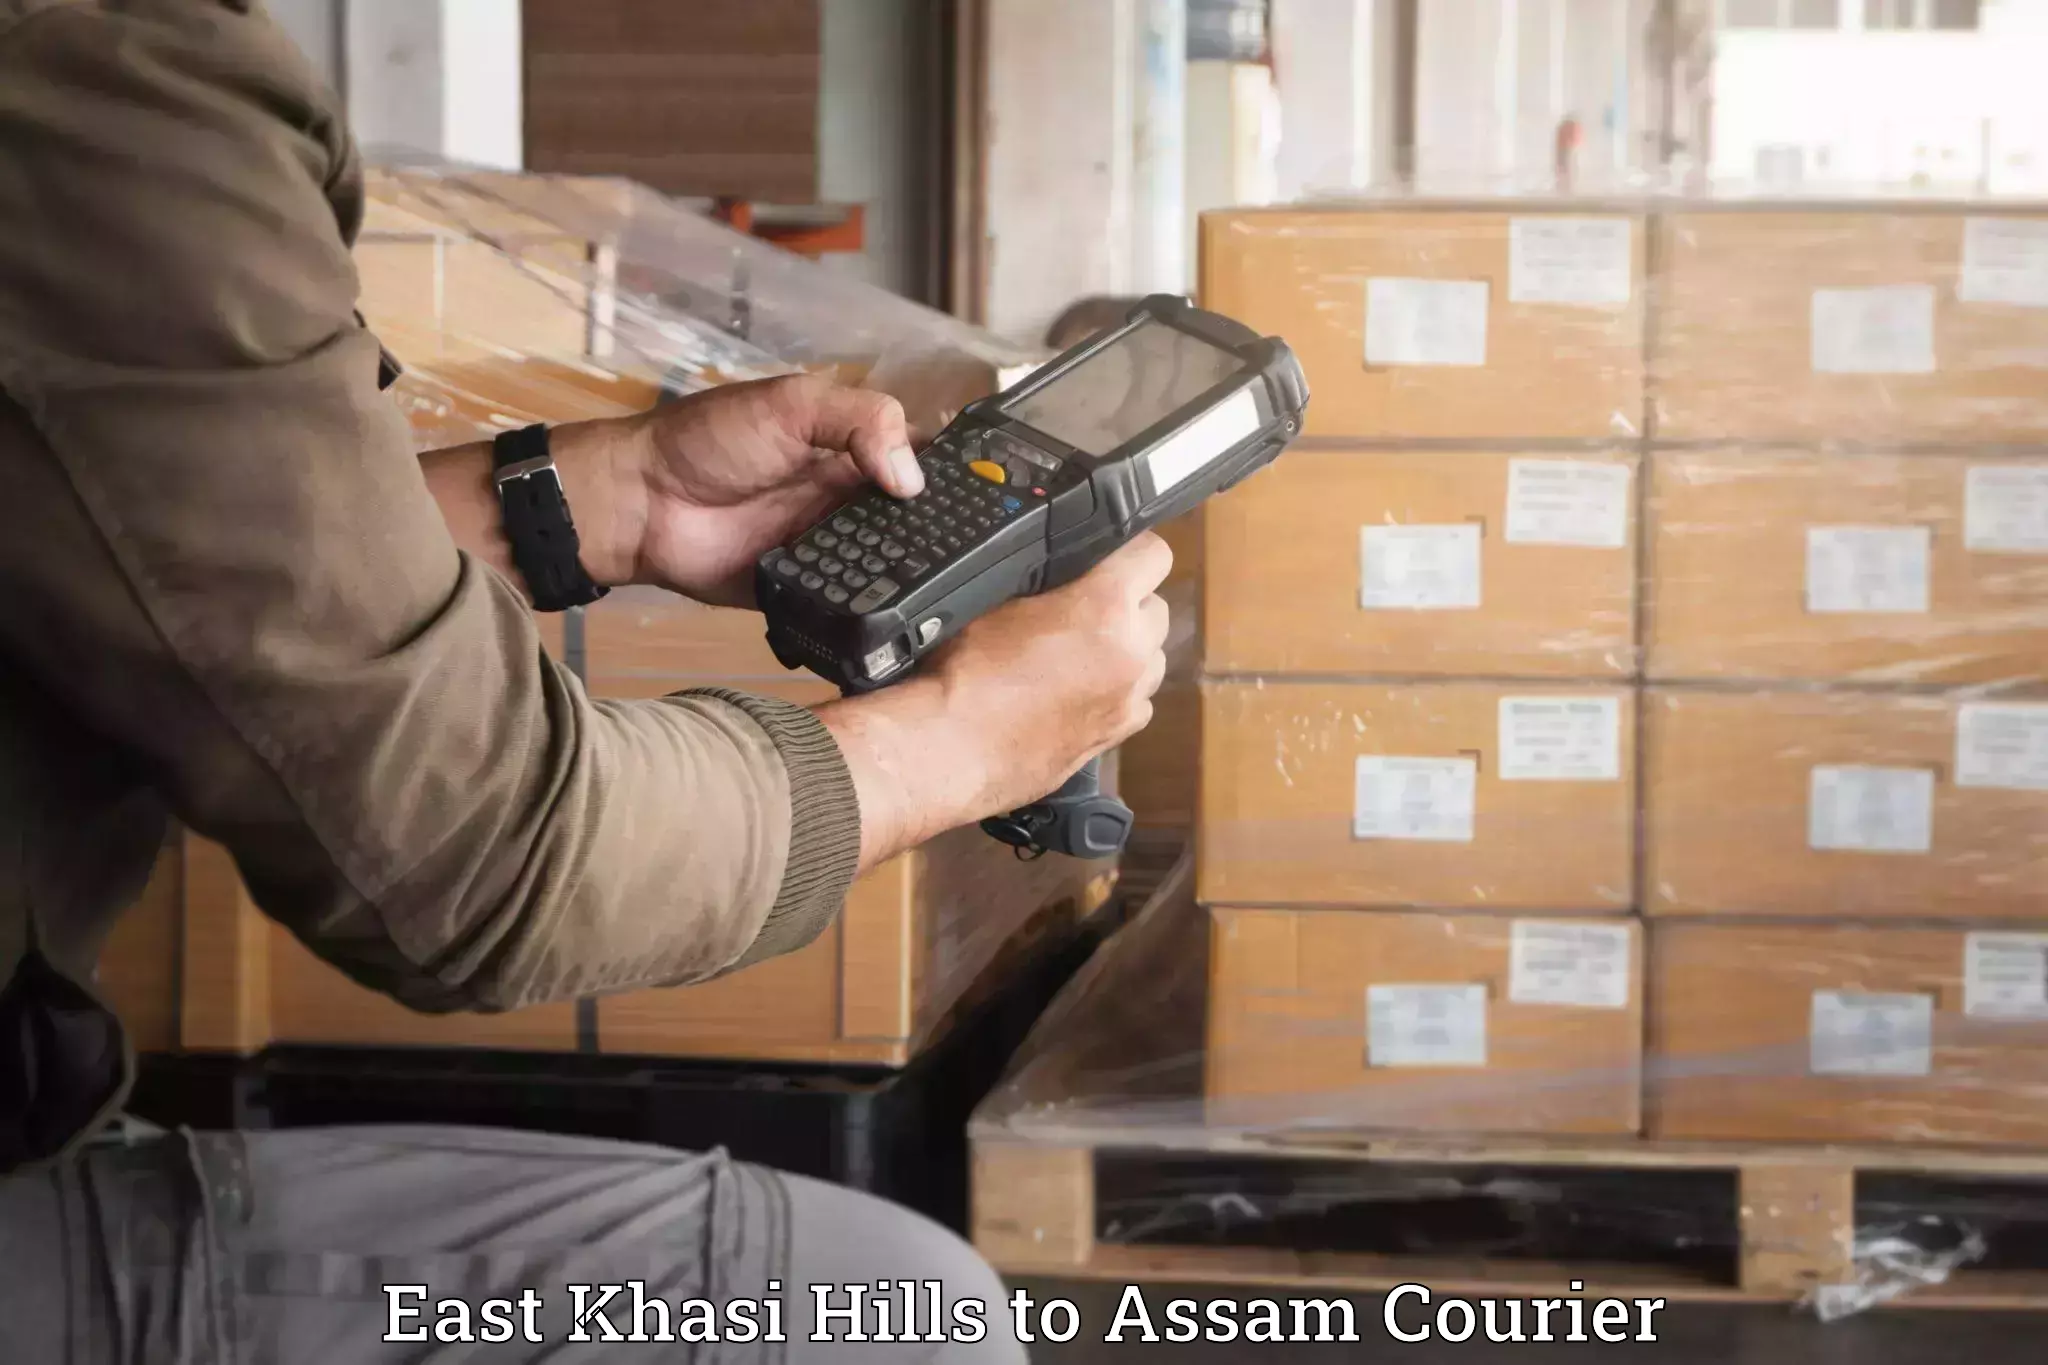 Luggage transport consulting East Khasi Hills to Baksha Bodoland